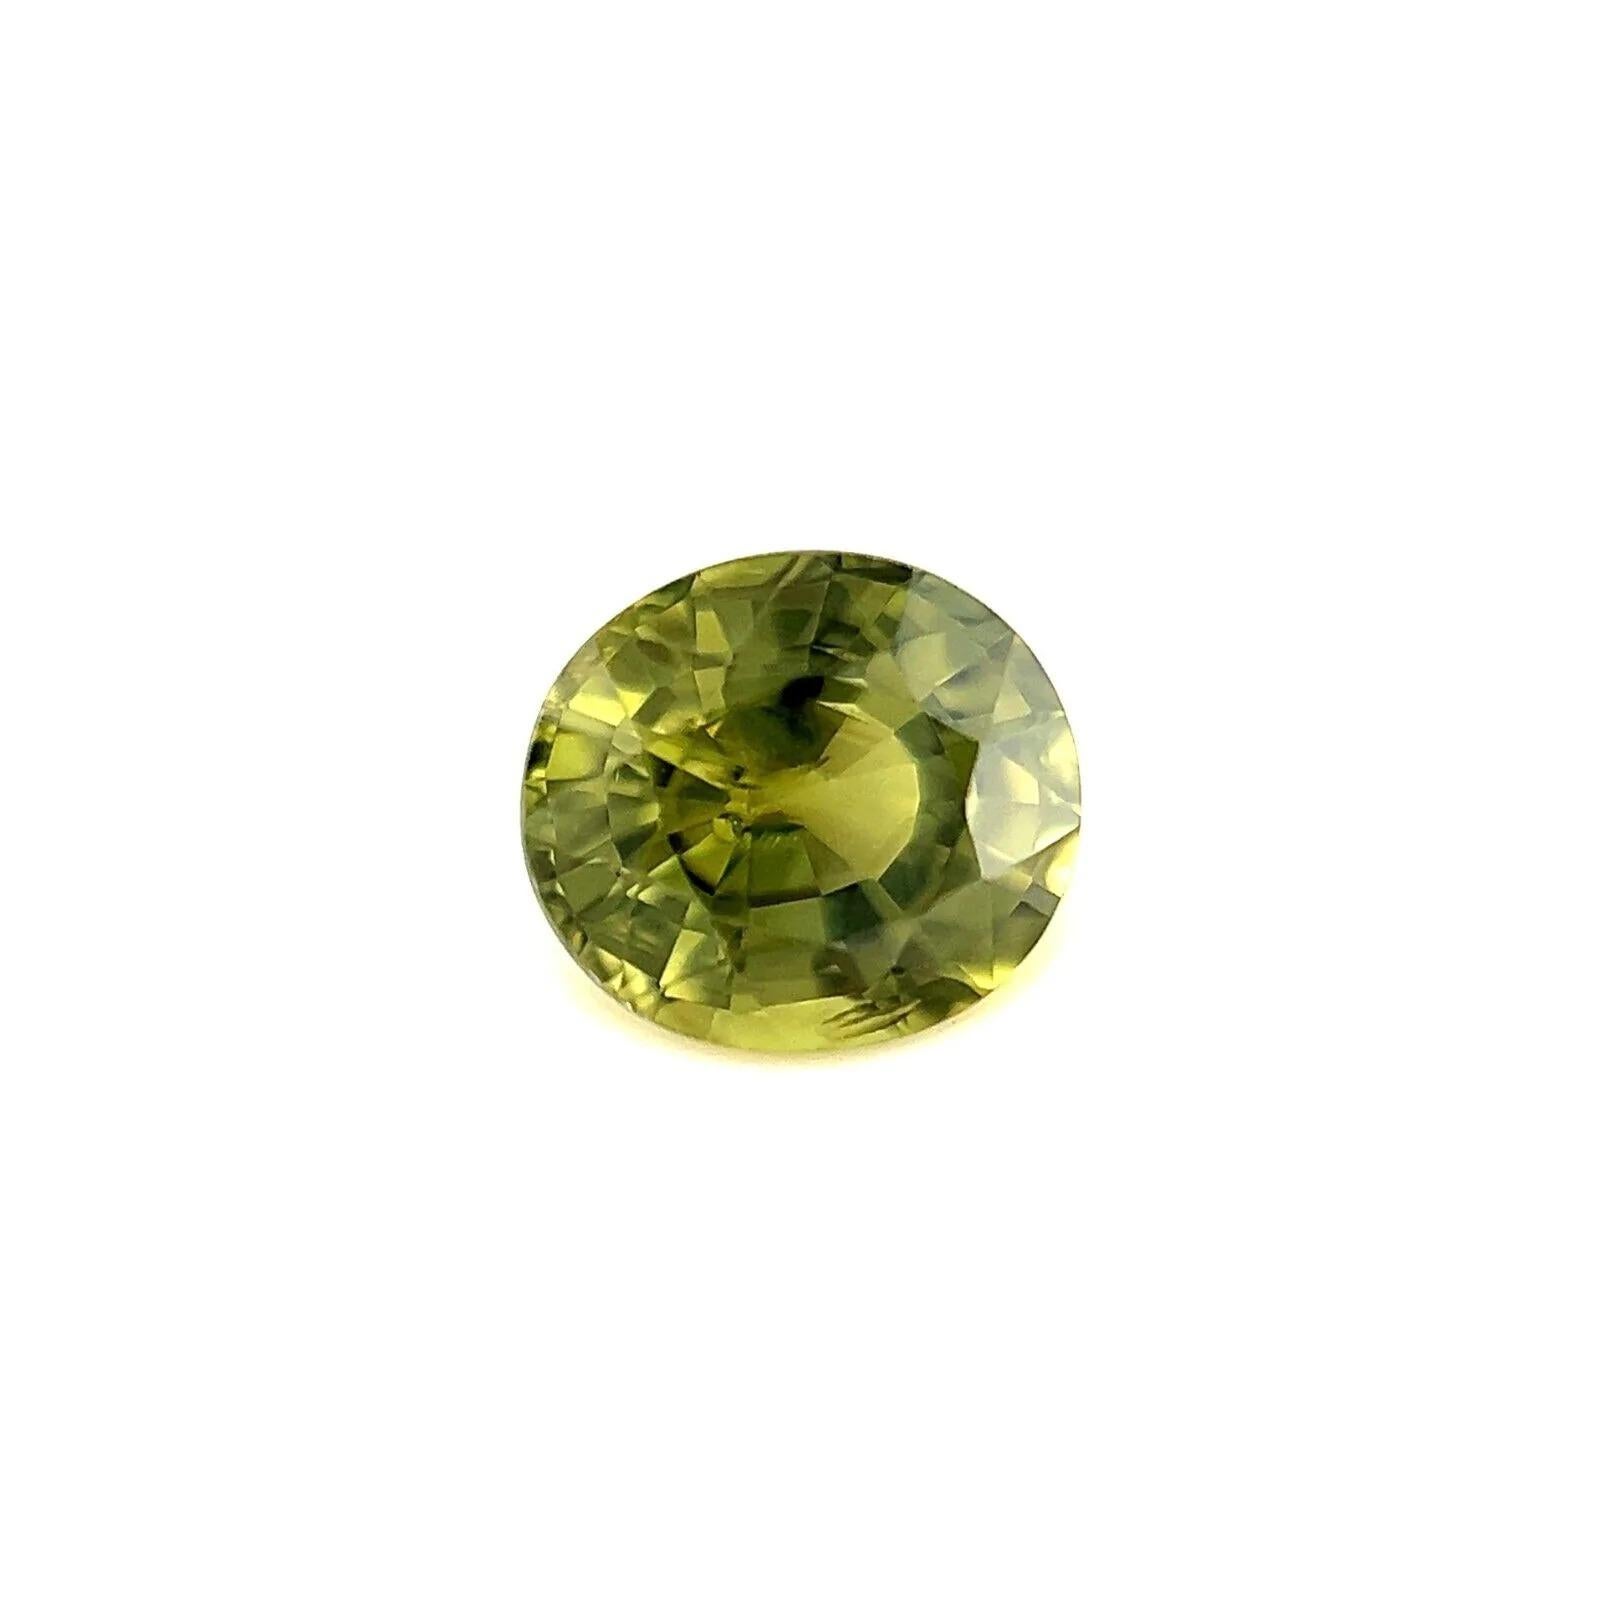 Einzigartige Farbe 0.95ct Seltener Gelber Grüner Australischer Saphir Oval Schliff 5.8x5.2mm

Fine Natural Yellow Green Sapphire Edelstein.
0.95 Karat mit einer einzigartigen lebhaften gelbgrünen Farbe und guter Reinheit, ein sehr sauberer Stein.